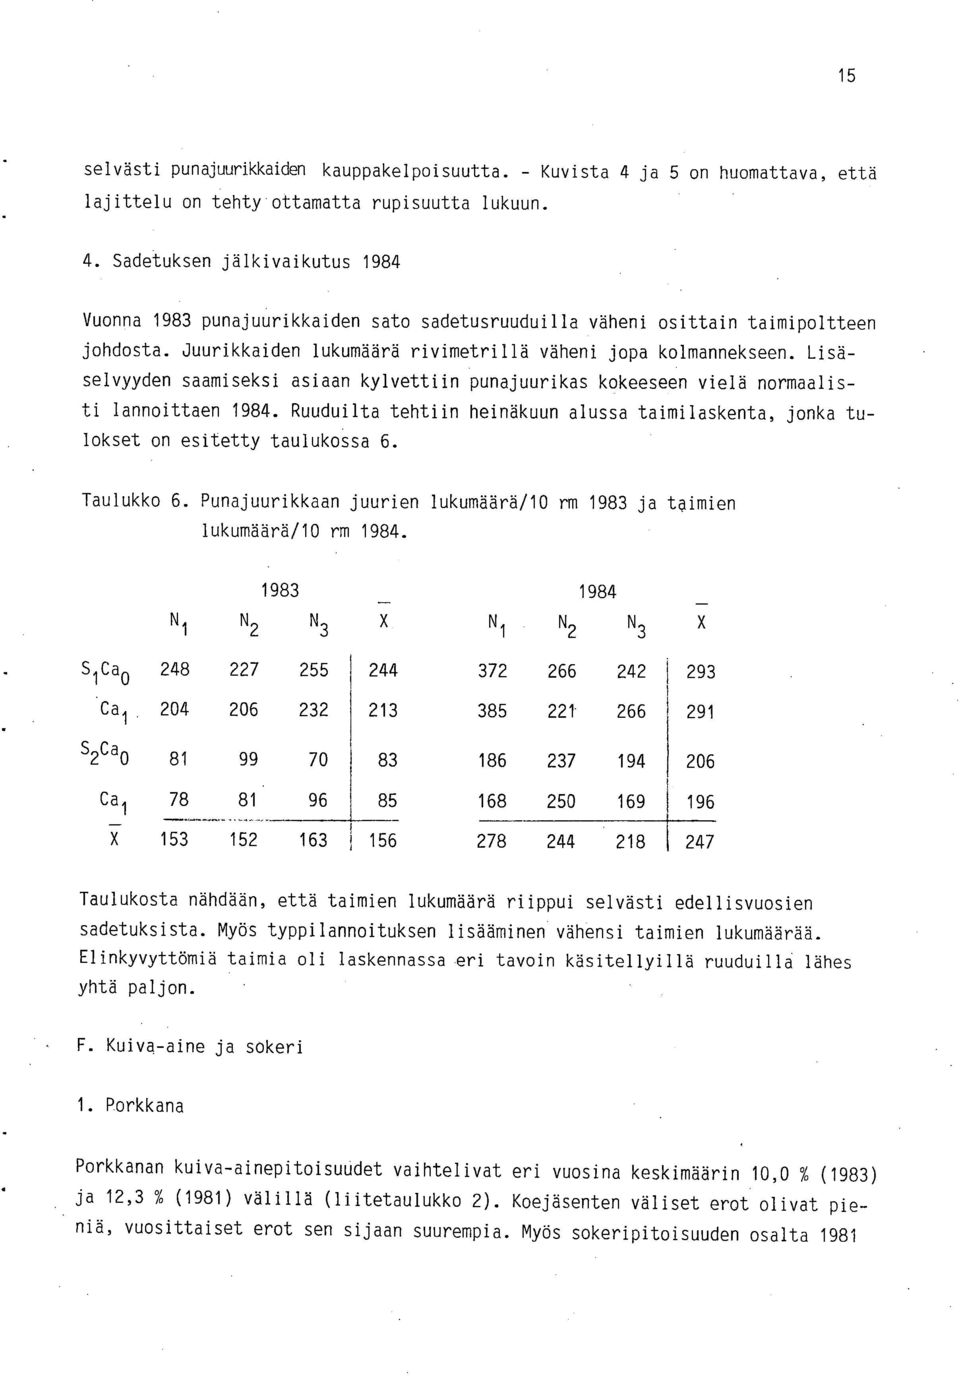 Ruuduilta tehtiin heinäkuun alussa taimilaskenta, jonka tulokset on esitetty taulukossa 6. Taulukko 6. Punajuurikkaan juurien lukumäärä/10 rm 1983 ja taimien lukumäärä/10 rm 1984.